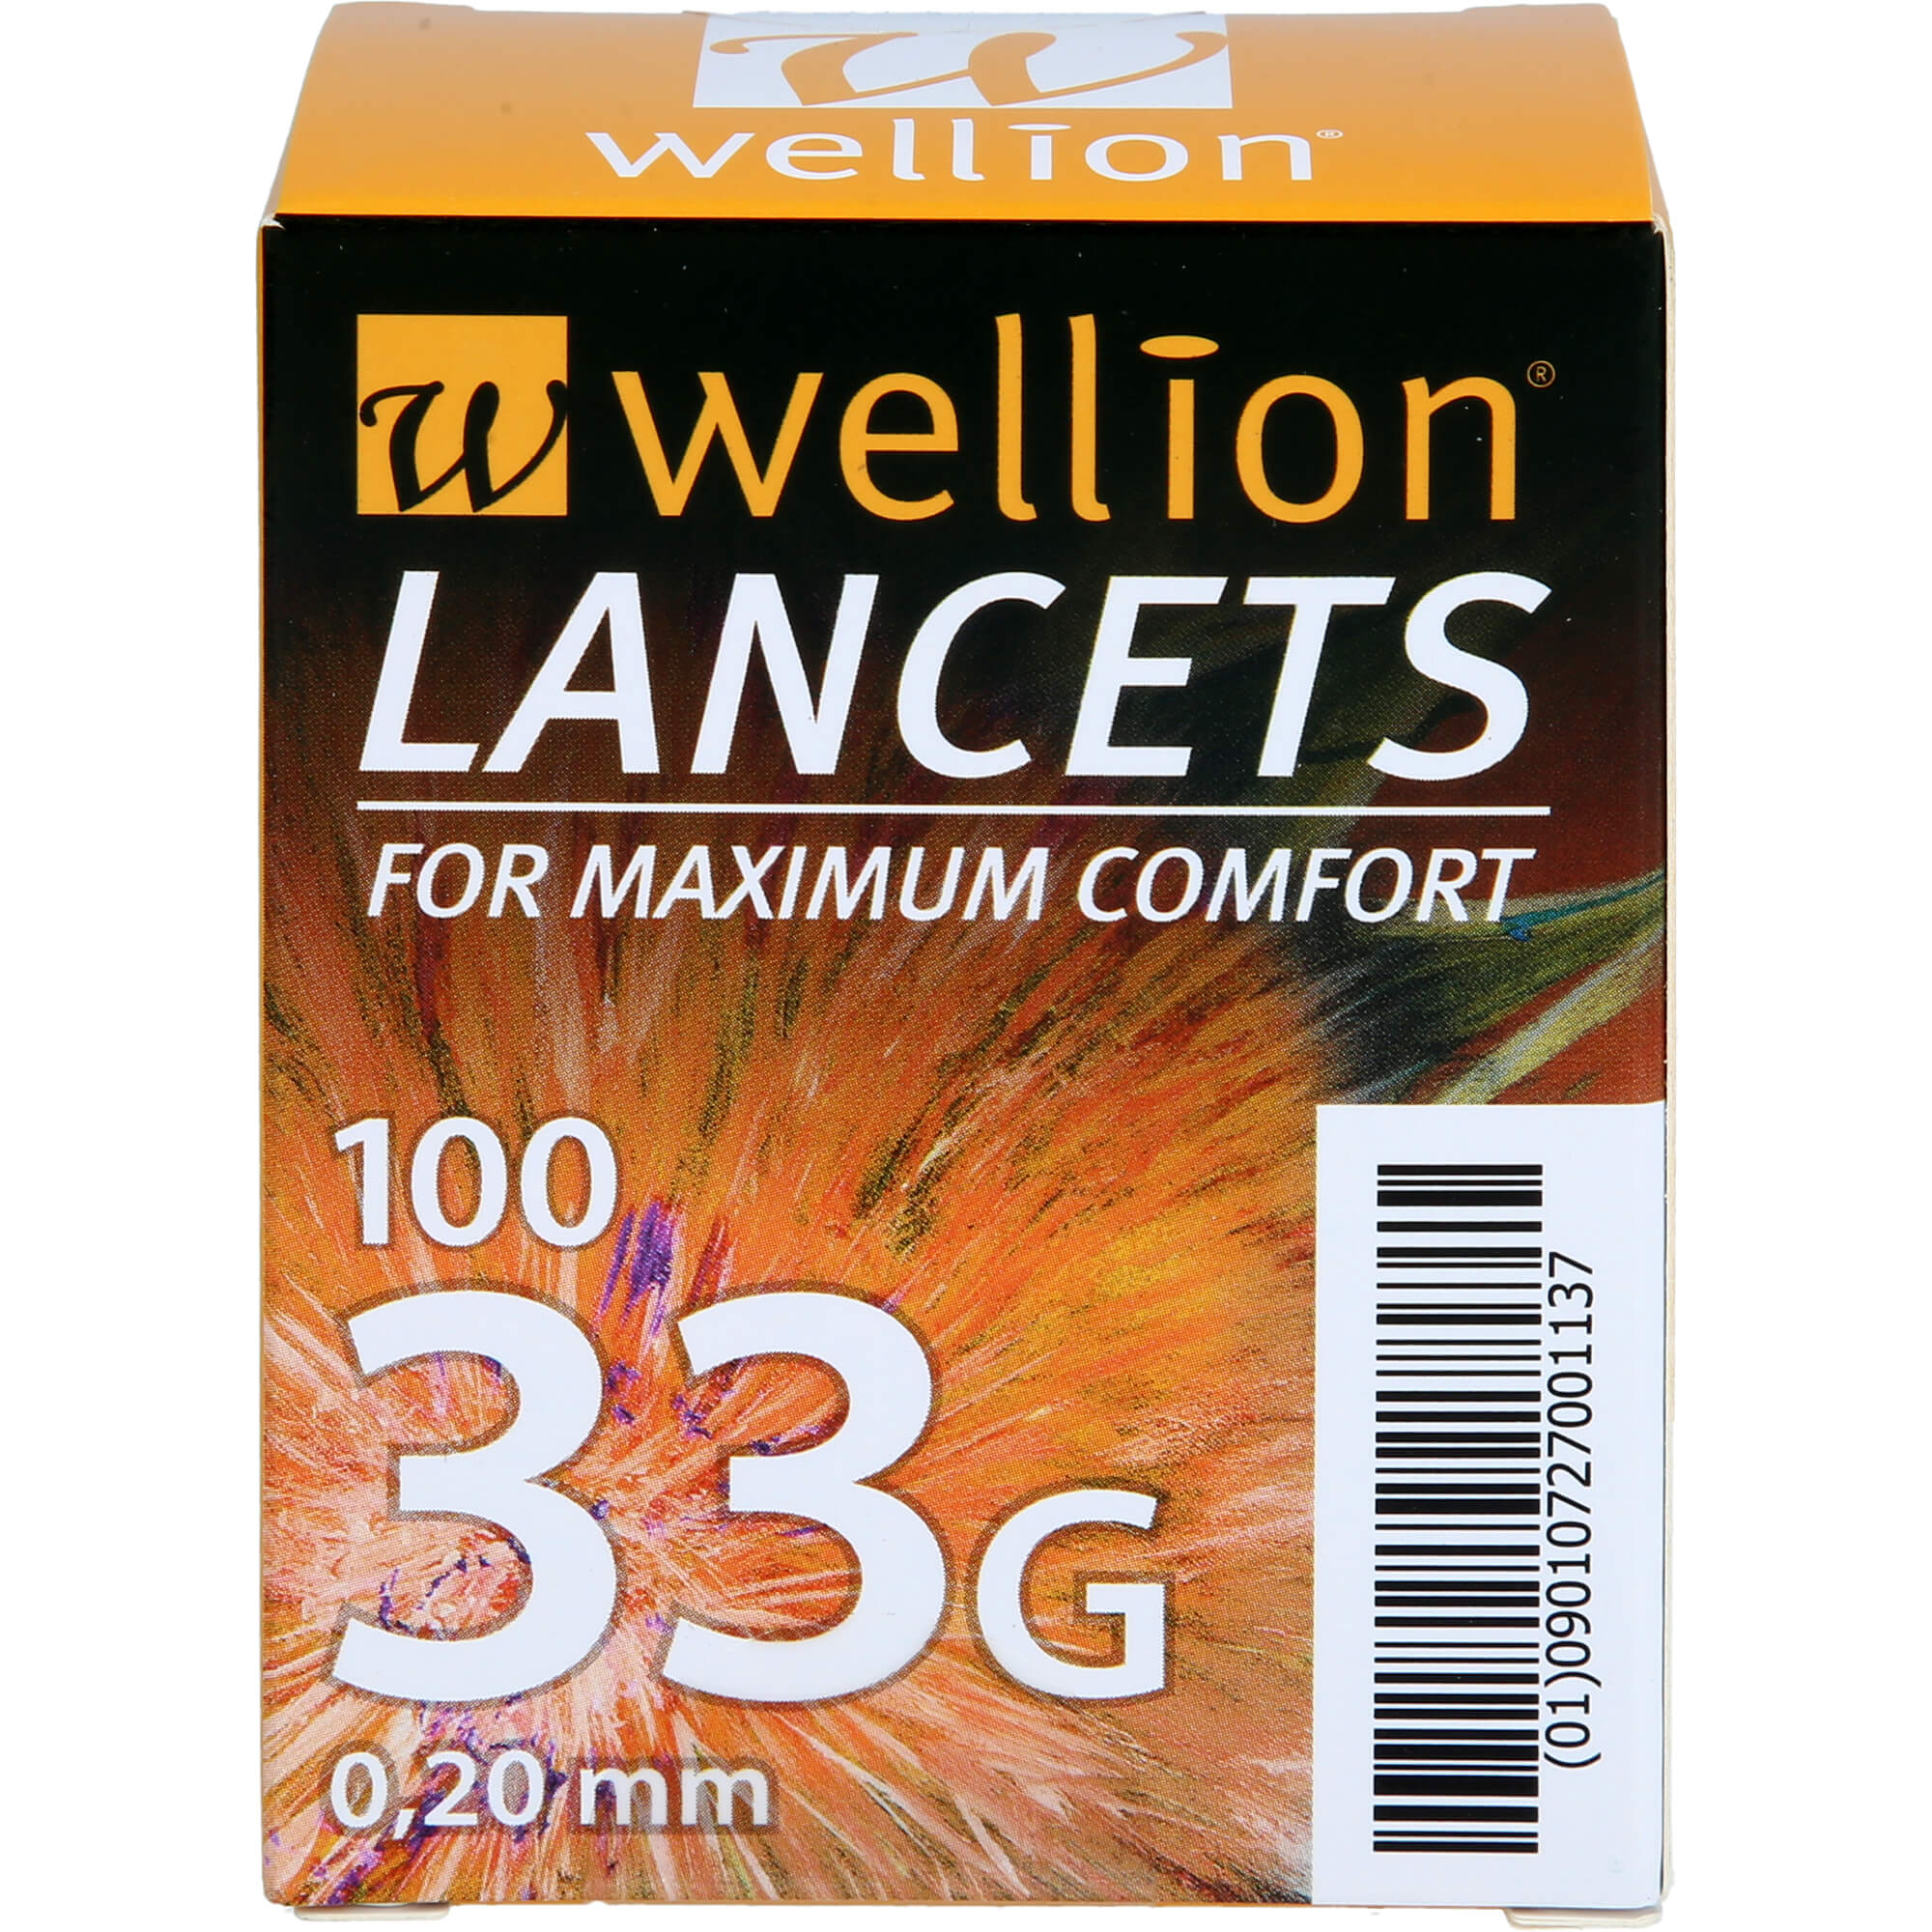 WELLION Lancets 33 G